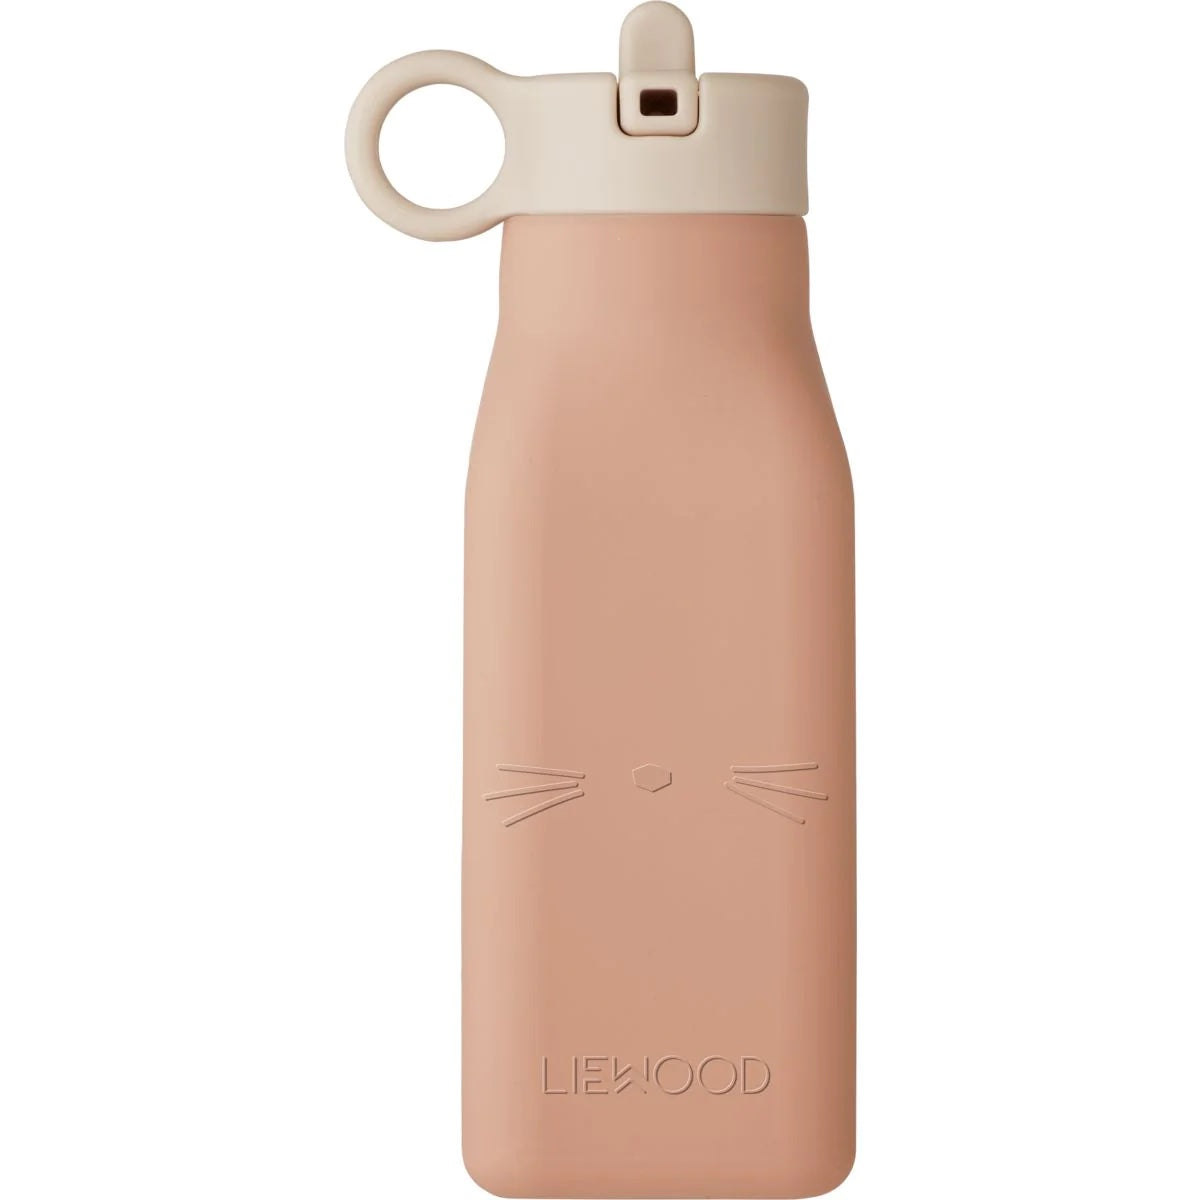 De Liewood warren drinkfles cat rose is een ideale drinkfles voor de allerkleinsten. Zodra je kindje, naast melk, meer gaat drinken is het handig om een fles te hebben die je overal mee naartoe kunt nemen. VanZus.